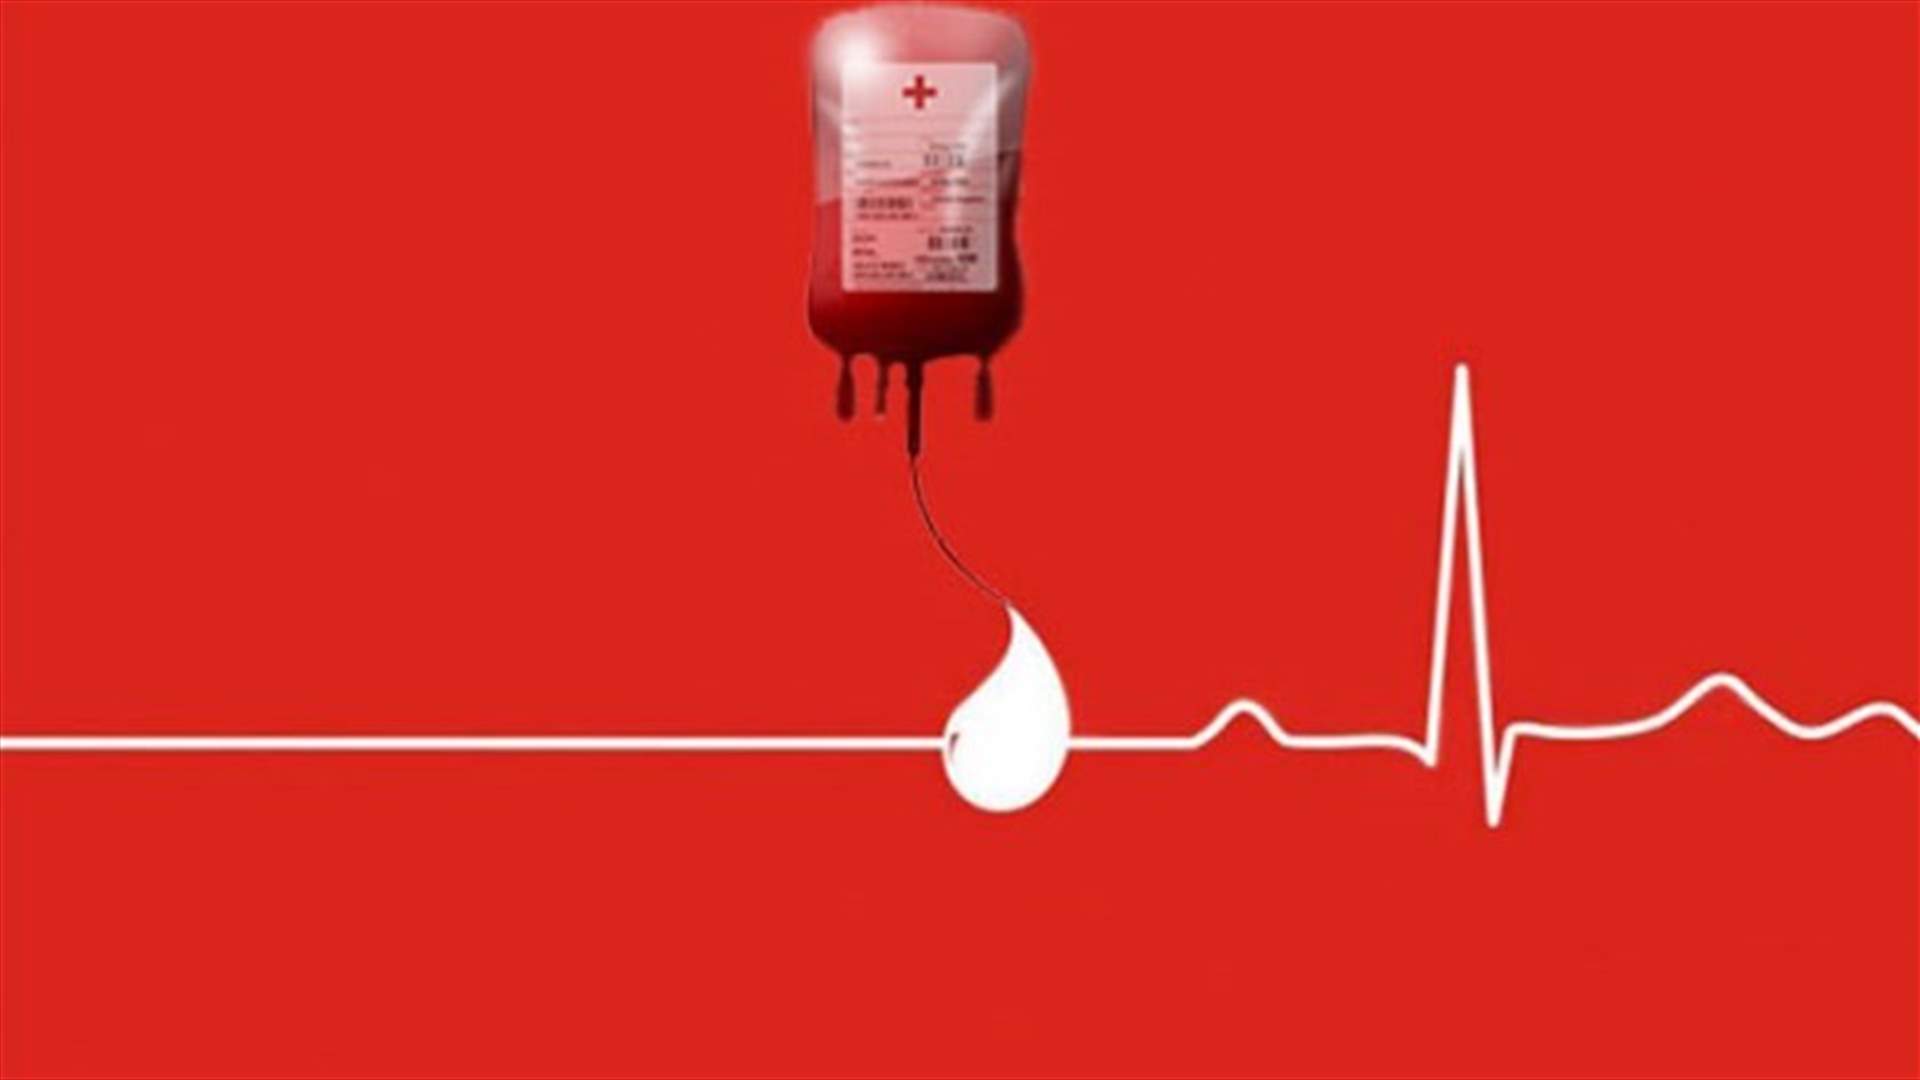 مريض في مستشفى الروم بحاجة ماسة الى بلاكيت دم من فئة O+ أو O-.. للتبرع الاتصال على الرقم التالي: 71537383